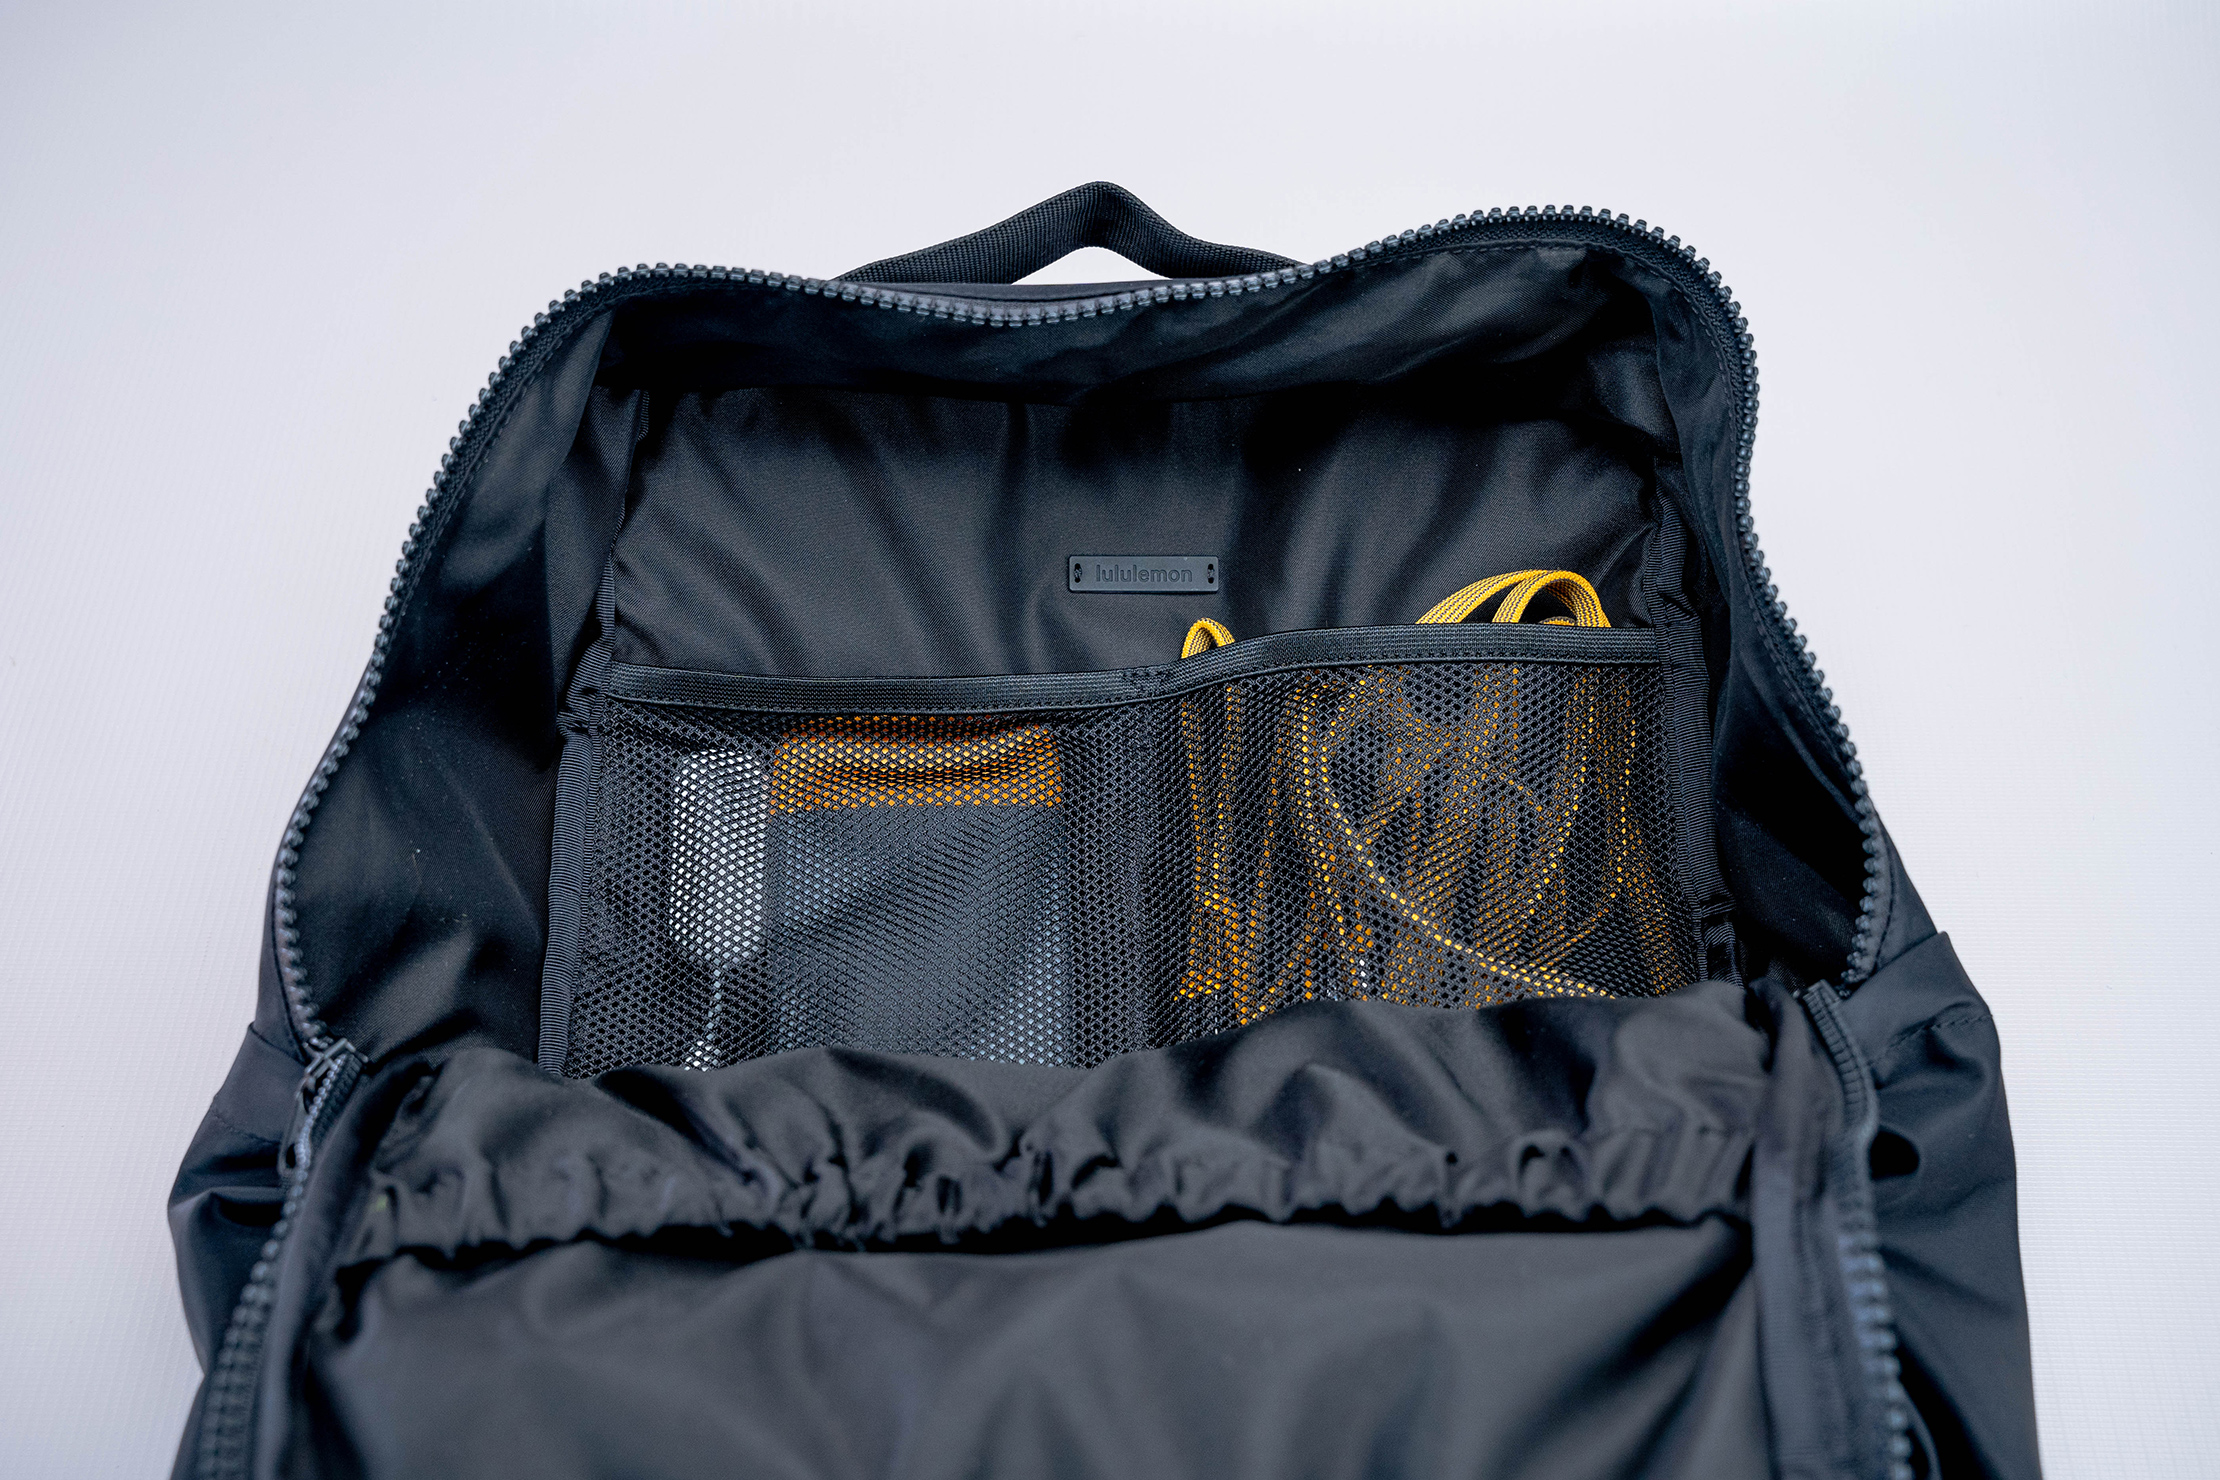 lululemon-everyday-backpack-2-0-23l-interior-mesh-pocket